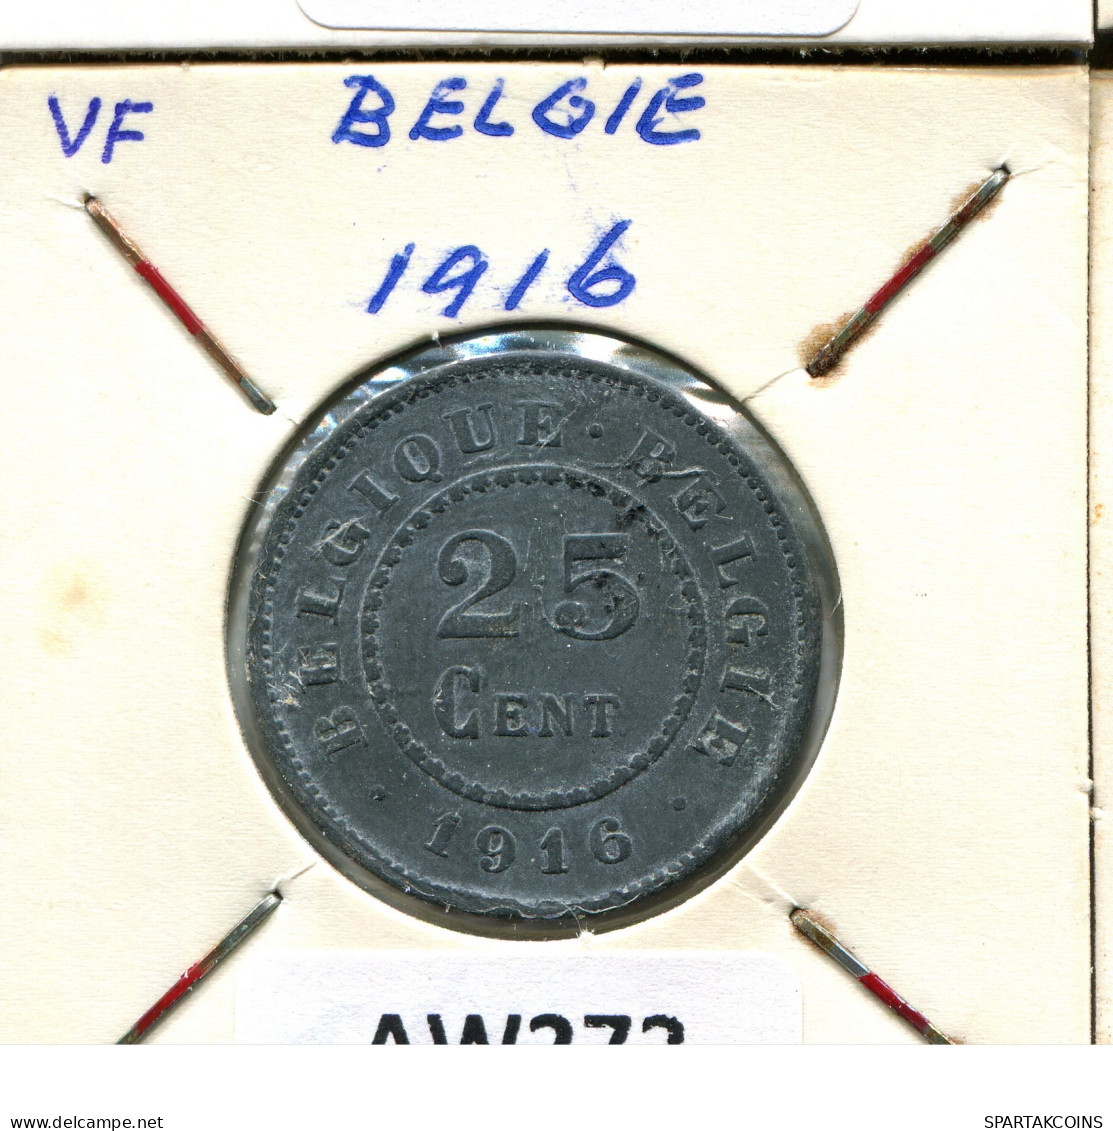 25 CENTIMES 1916 BELGIQUE-BELGIE BELGIQUE BELGIUM Pièce #AW272.F - 25 Cents